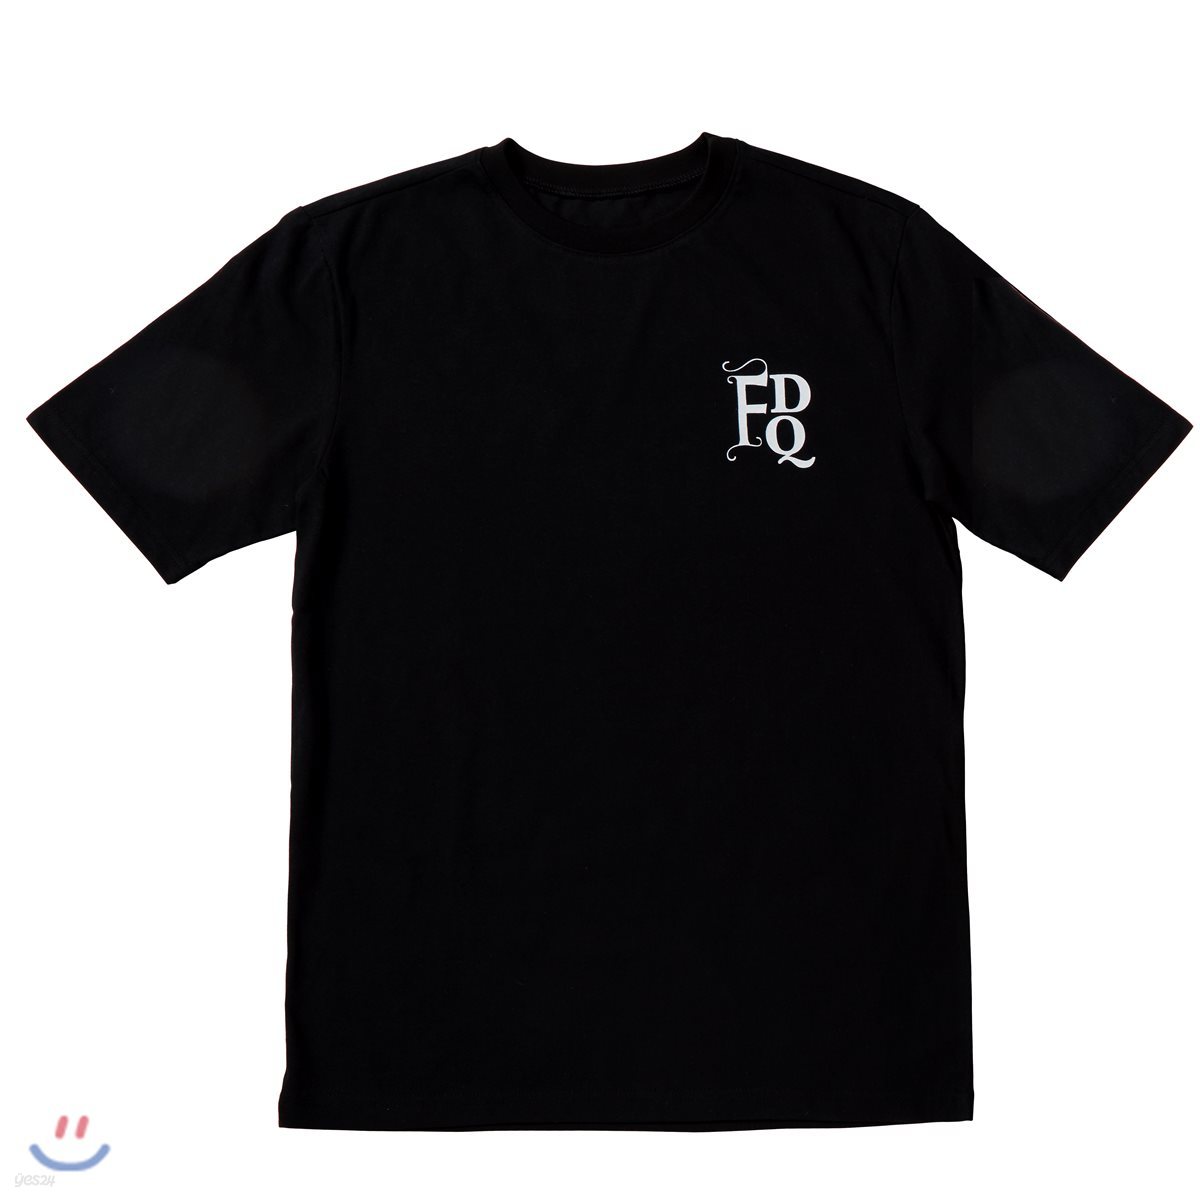 포르테 디 콰트로 머천다이즈 - 티셔츠 [블랙/ M사이즈] (Forte Di Quattro - FDQ Logo T-Shirt Black M)